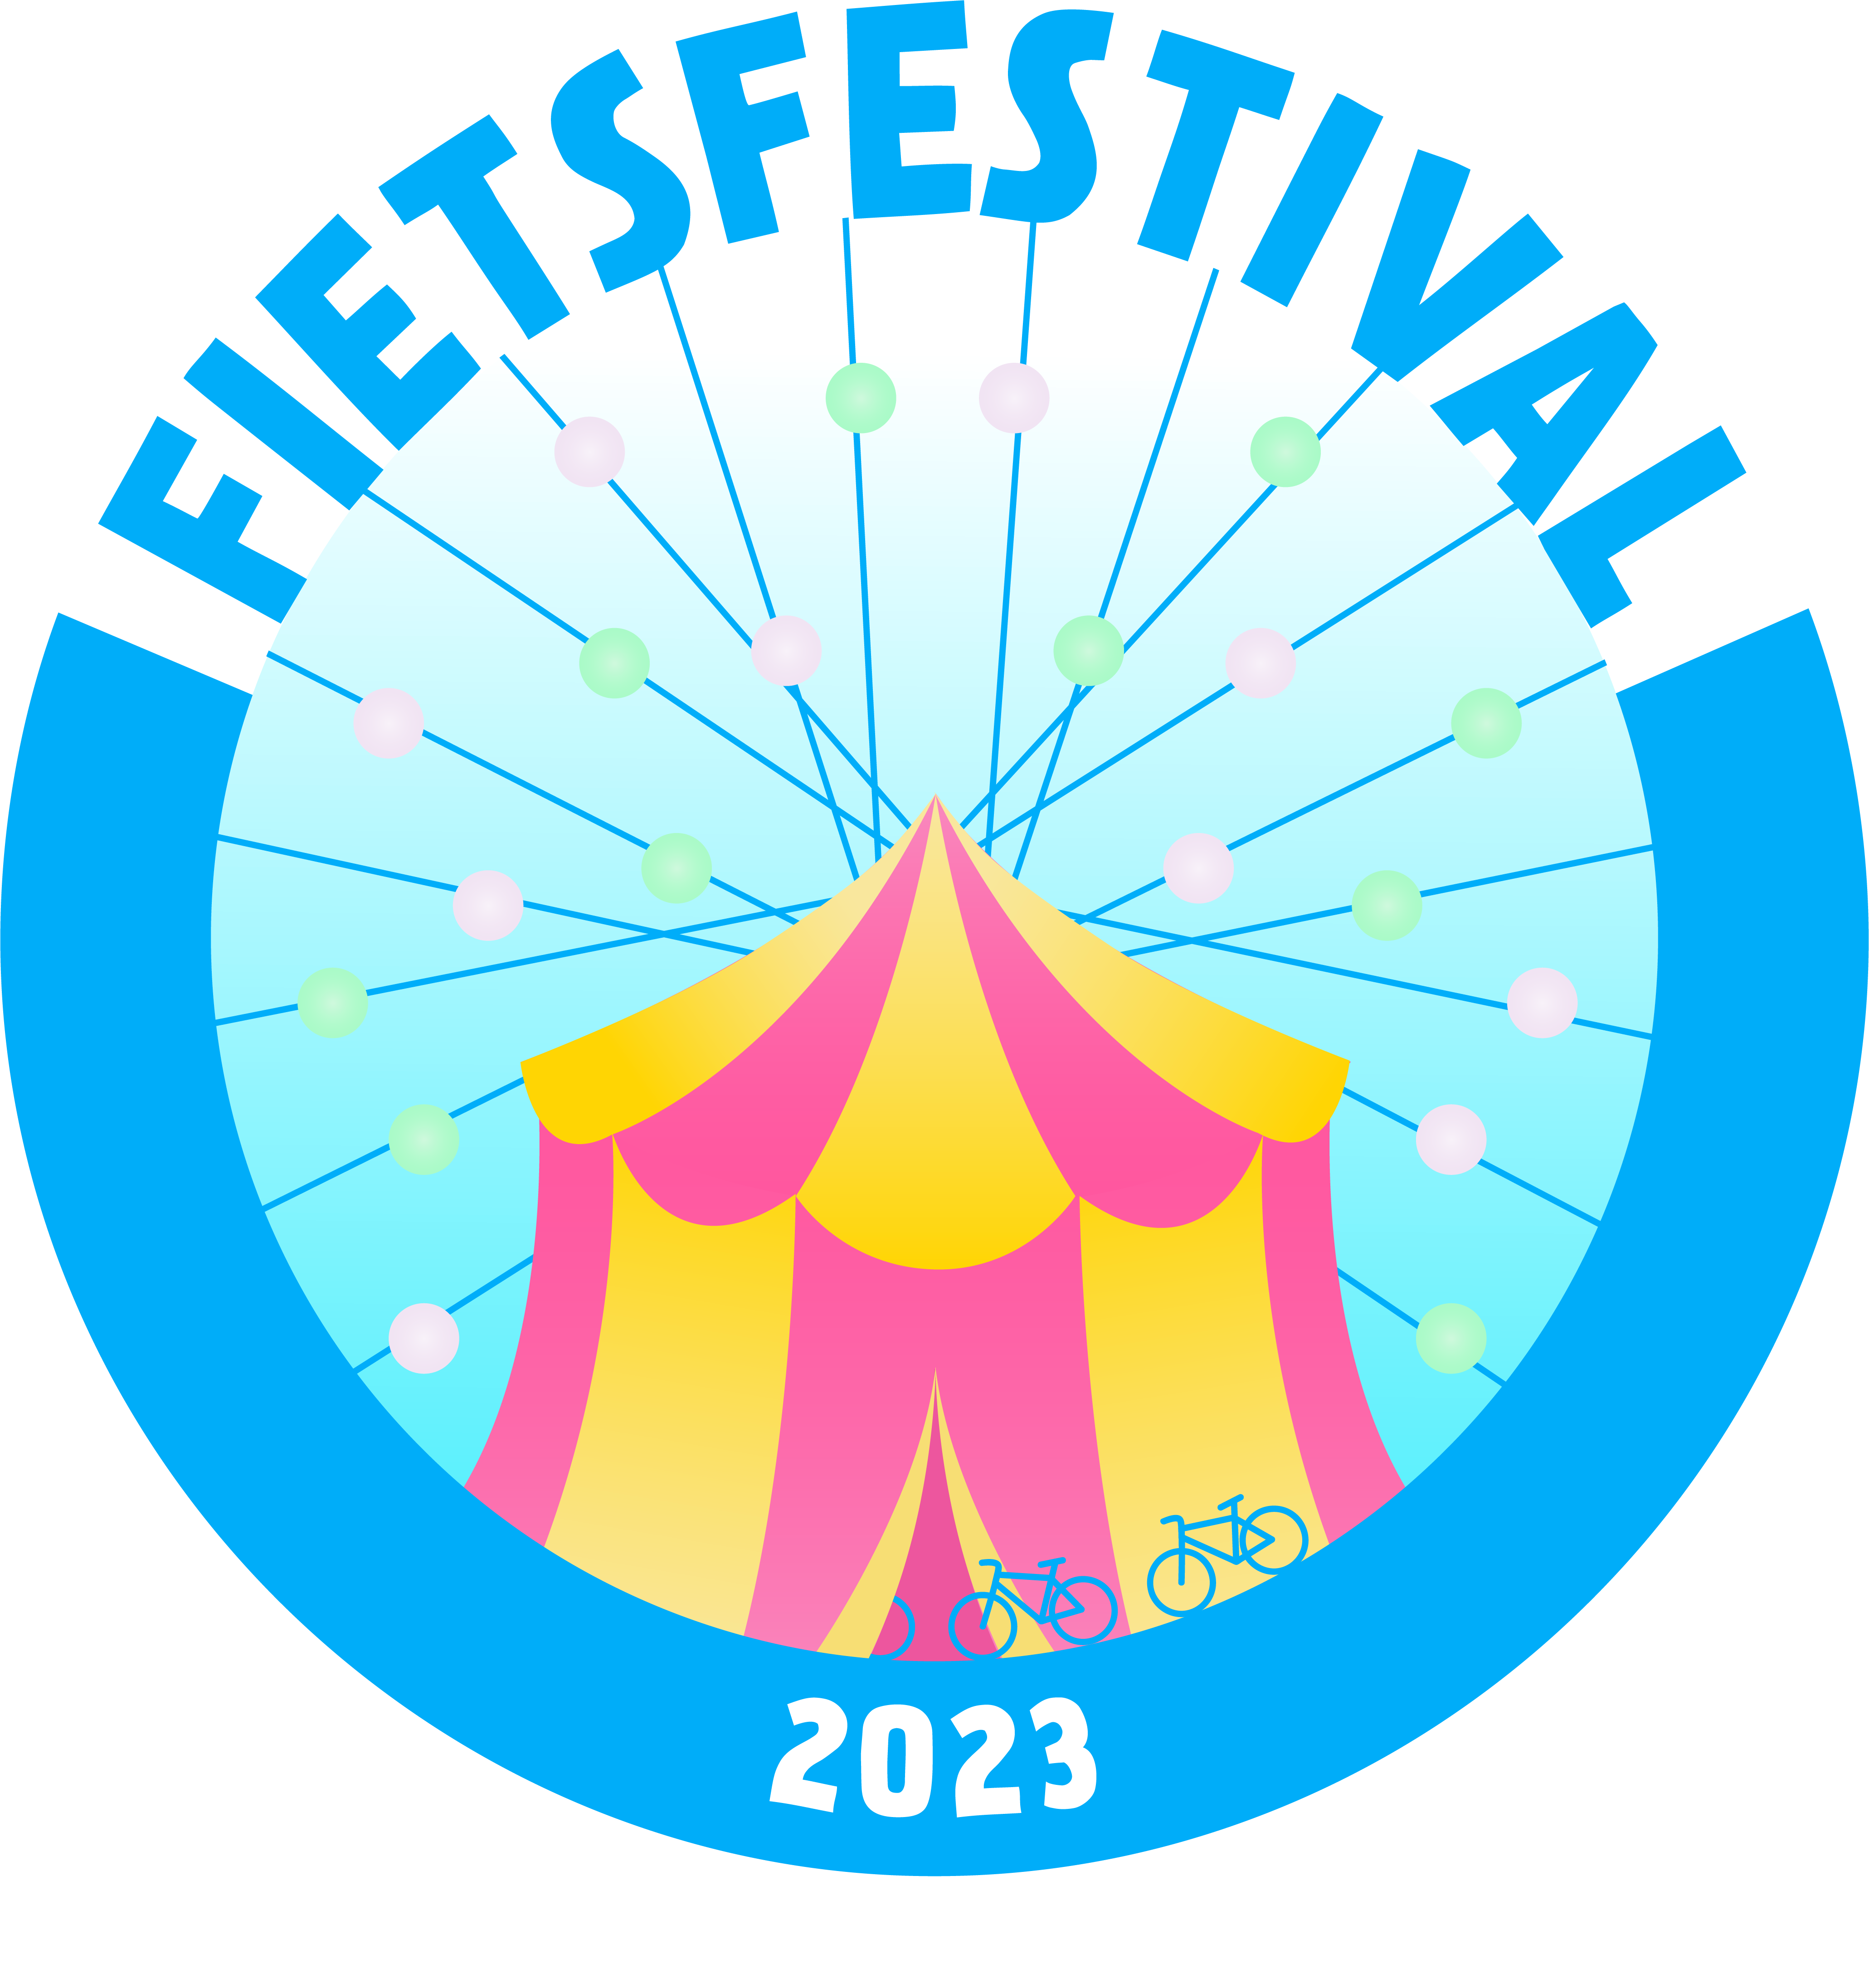 Fietsfestival 2023